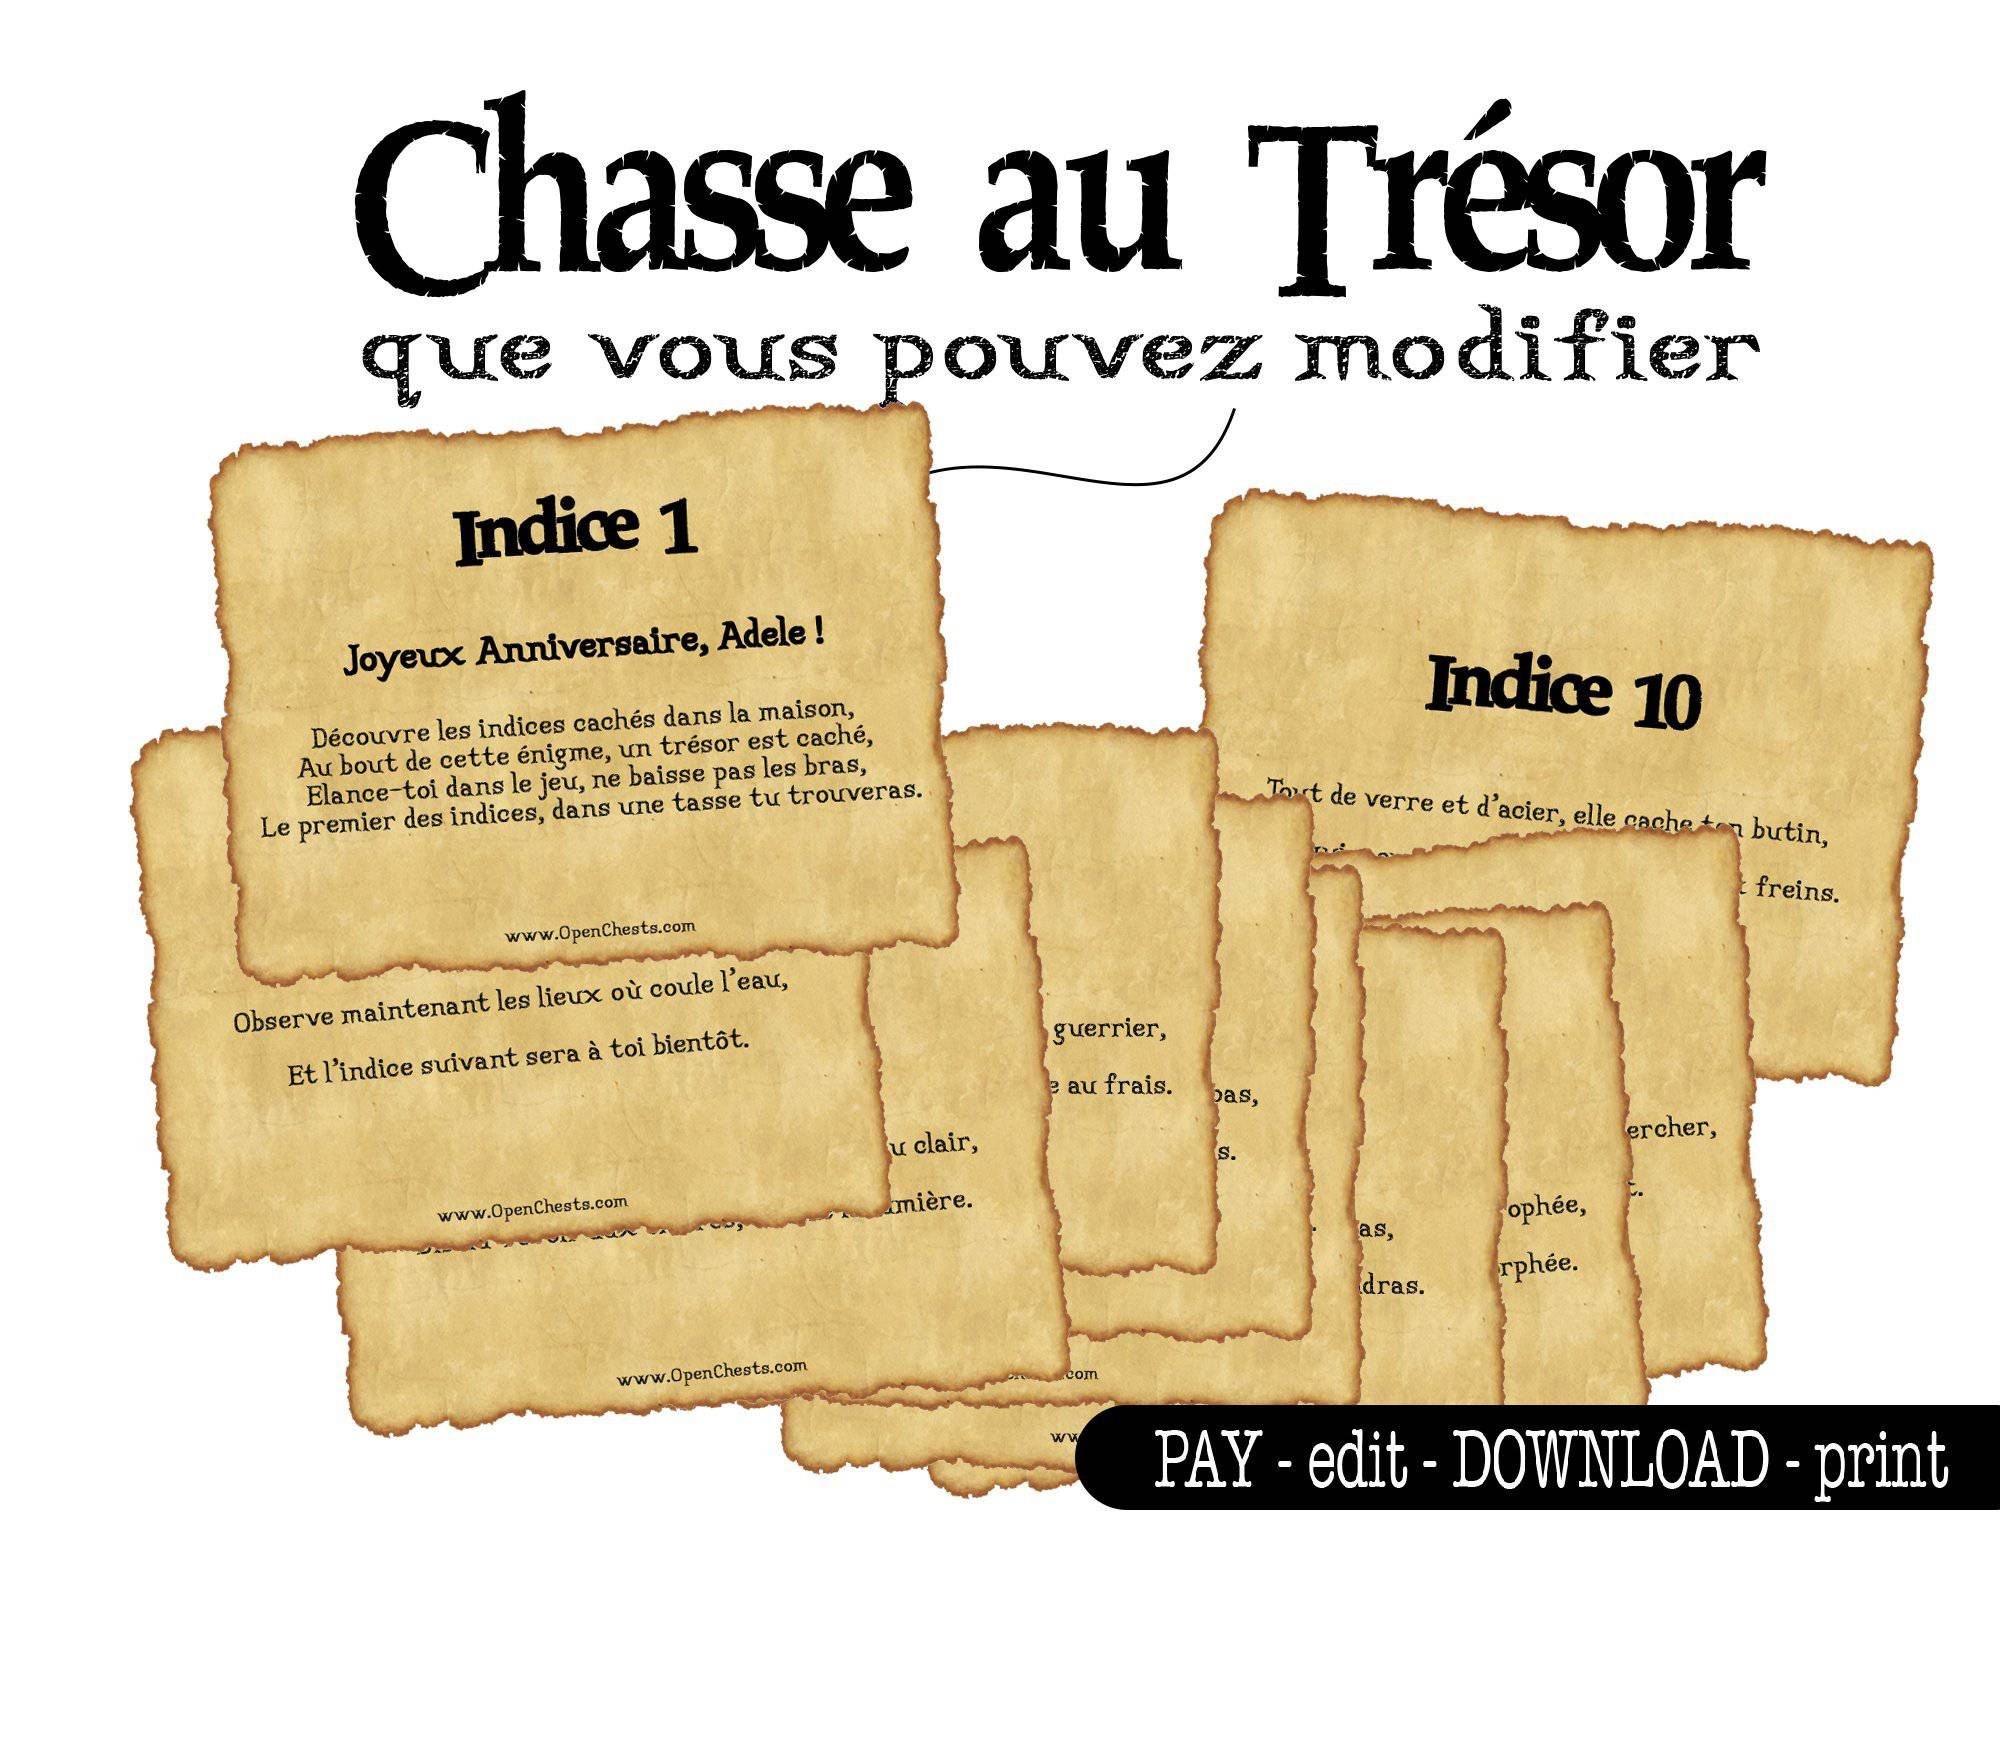 Chasse au Trésor - Open Chests